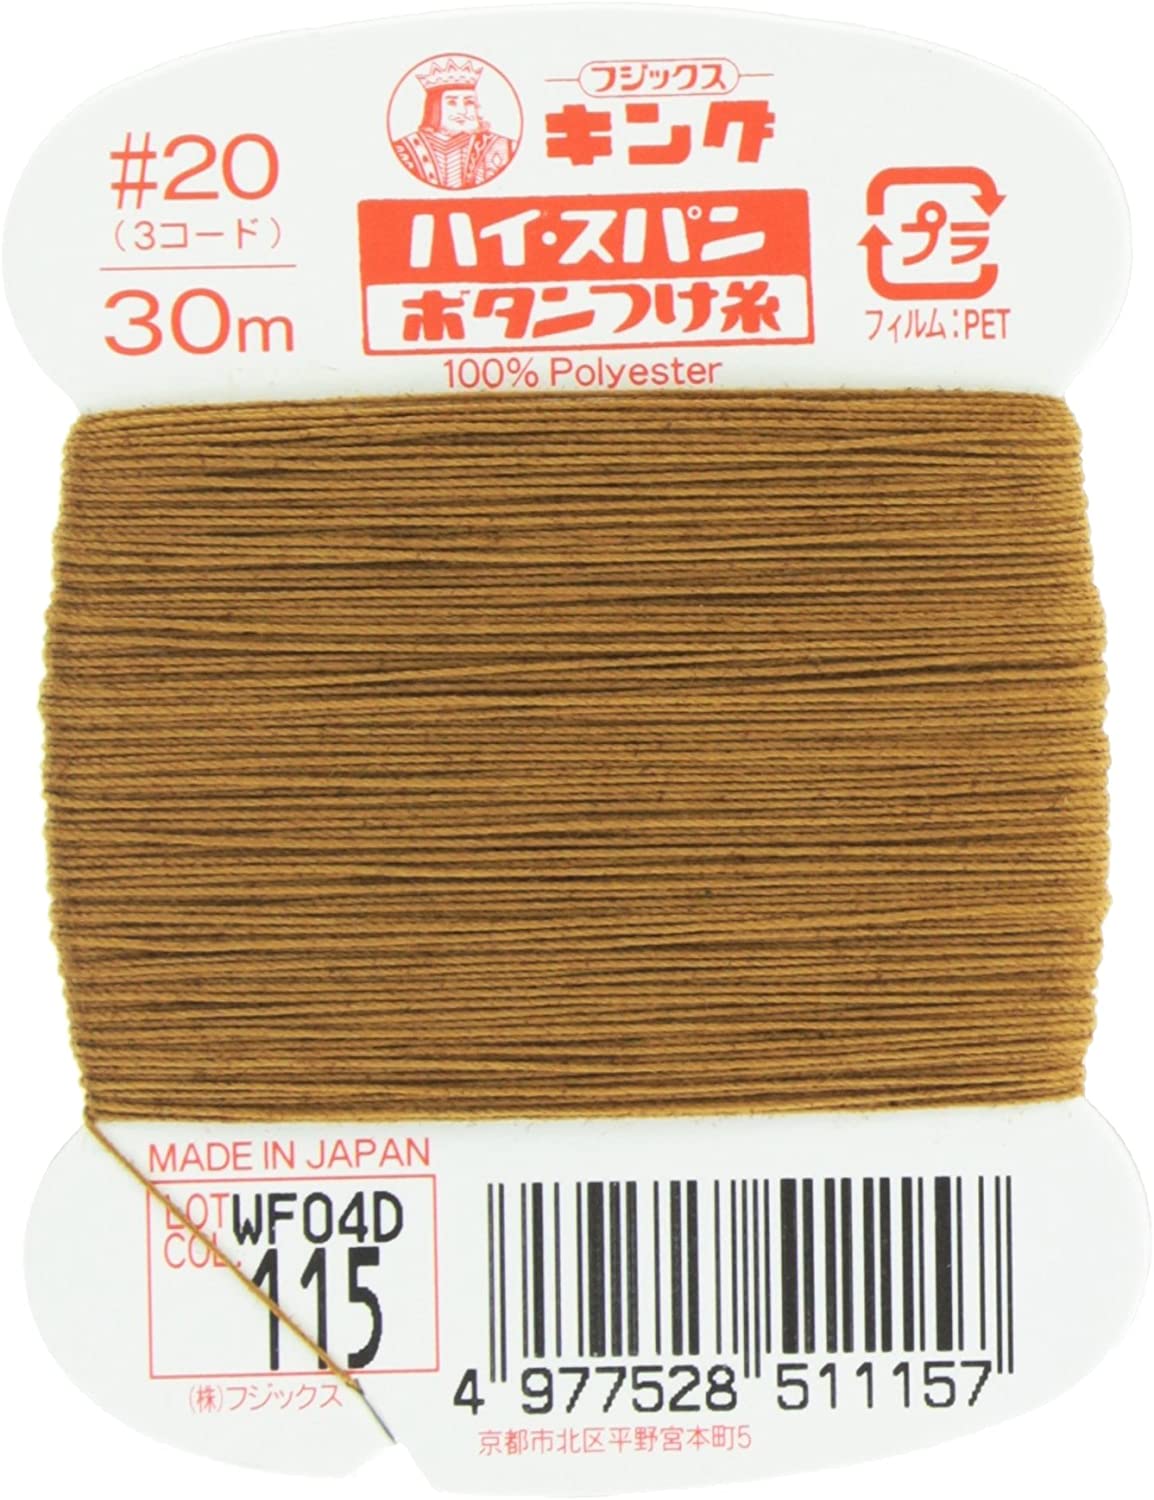 FK51-115 ハイスパンボタンつけ糸 #20 30m巻 (枚)